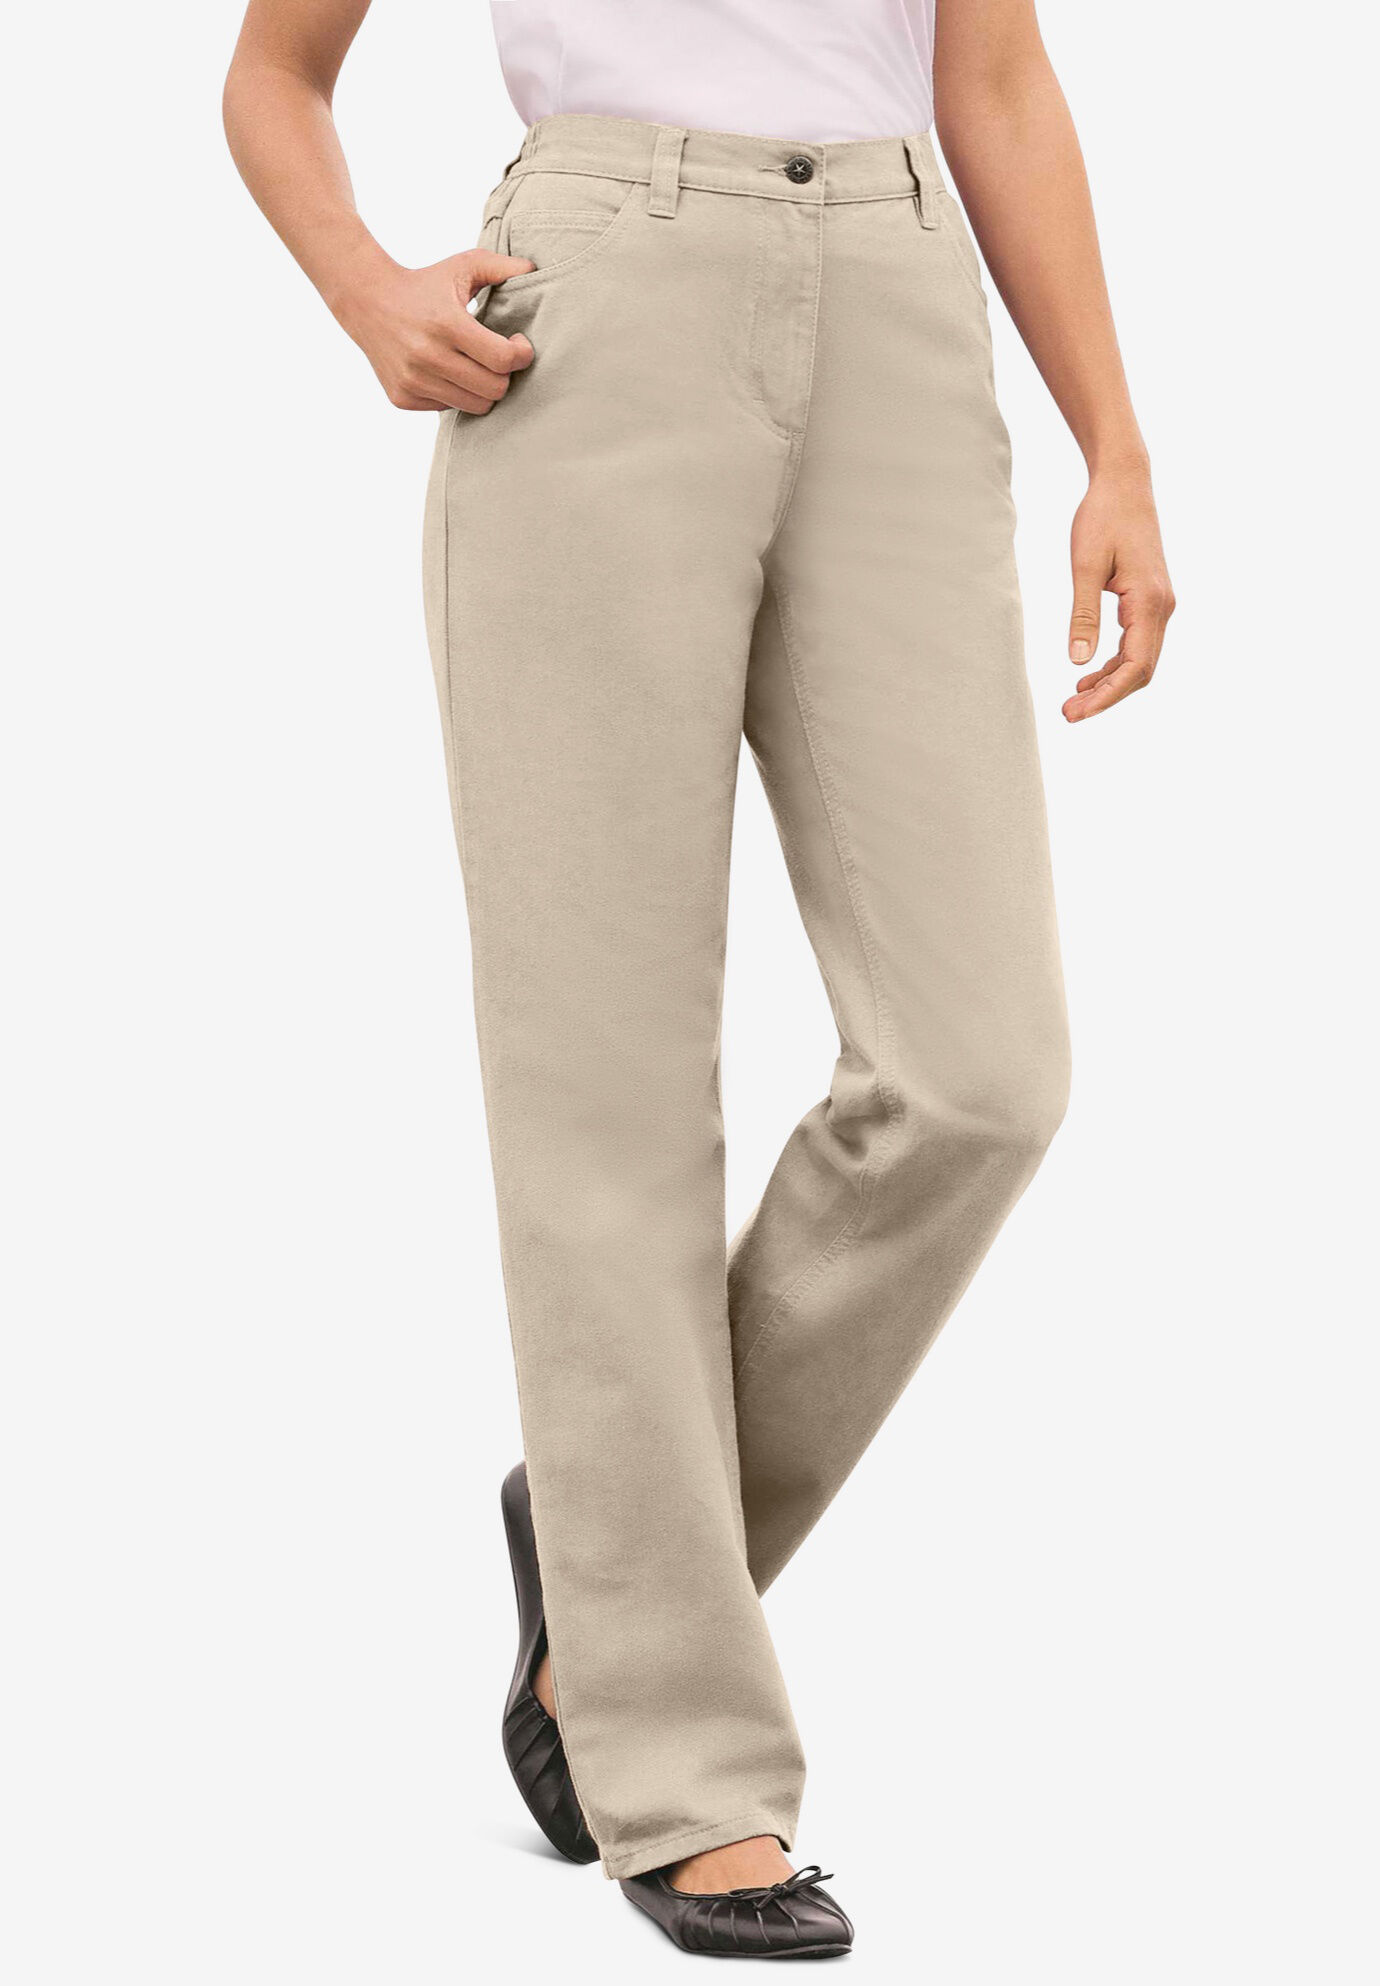 khakis women's plus size pants